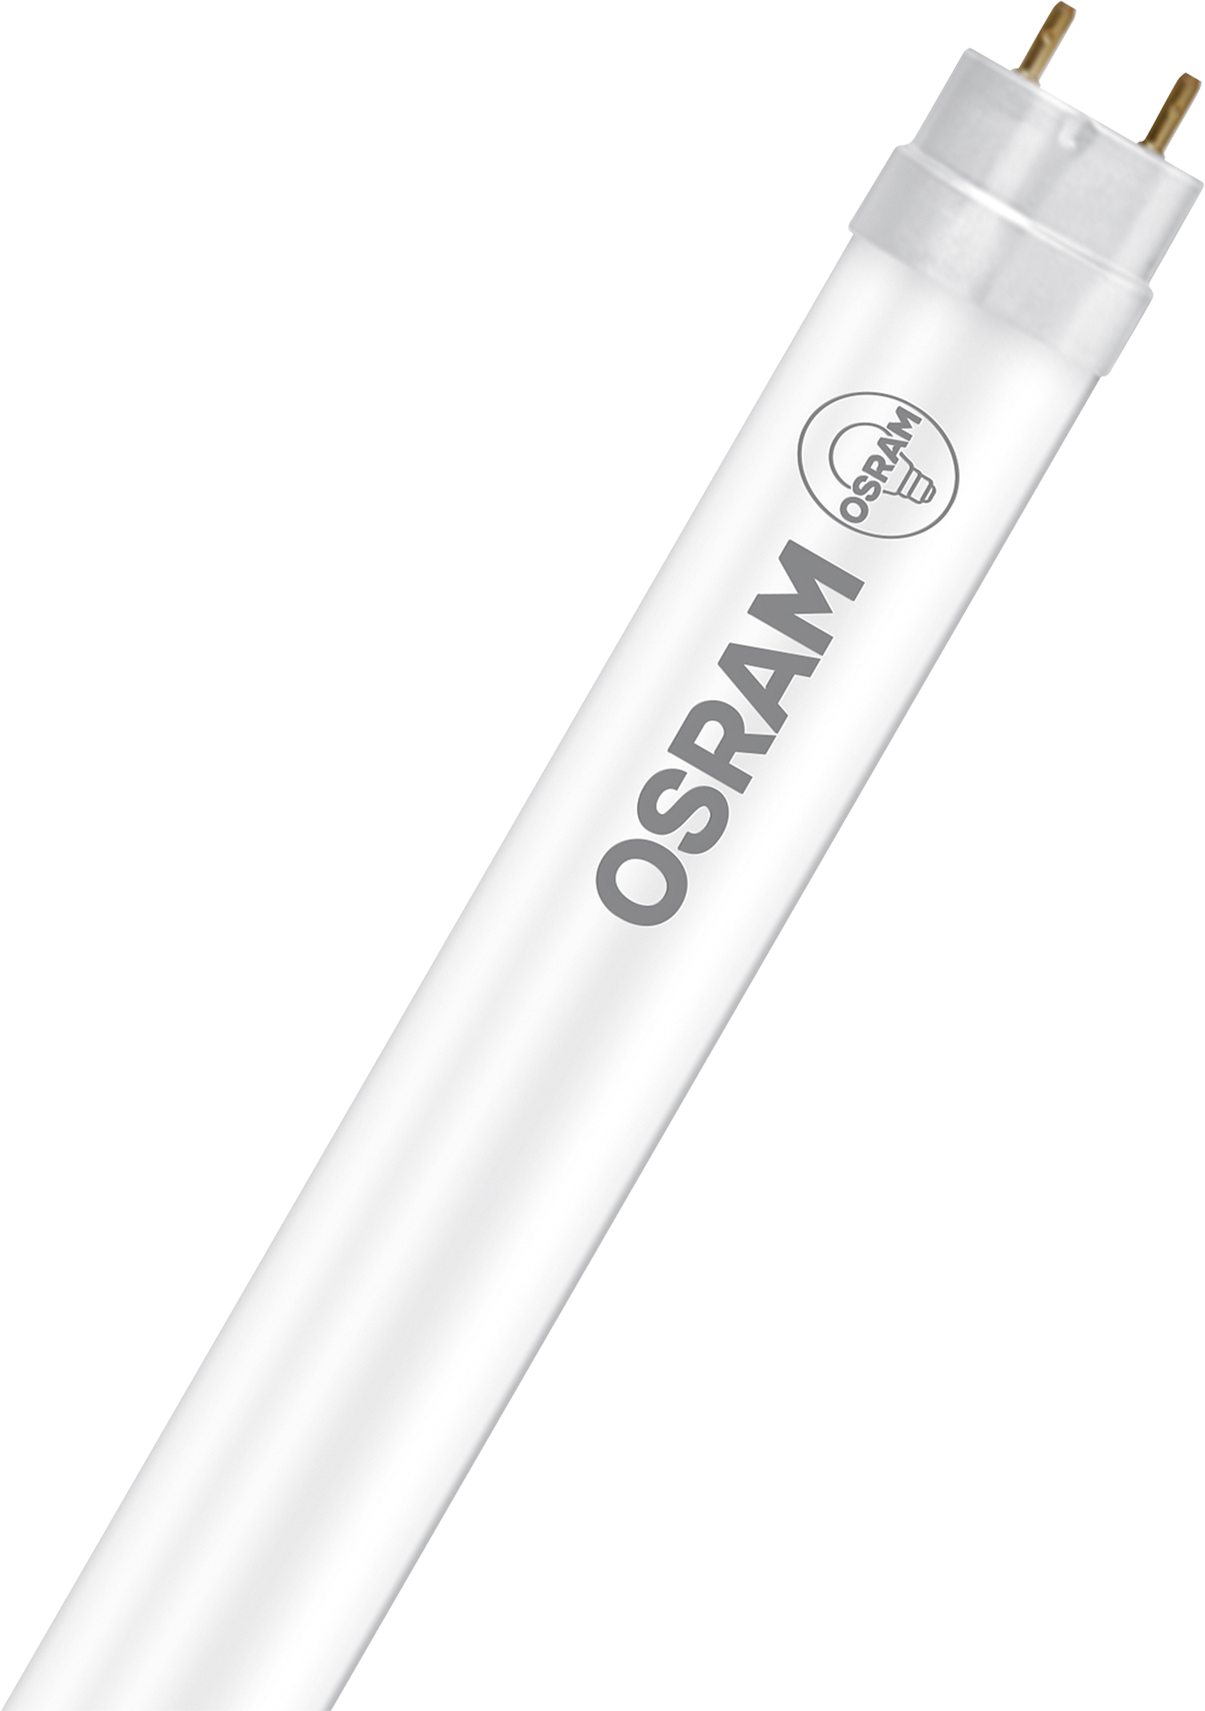 OSRAM Leuchtstofflampe T8 G13, 18.3W, 5200lm, warm white, dimmbar - Lampen, Leuchten